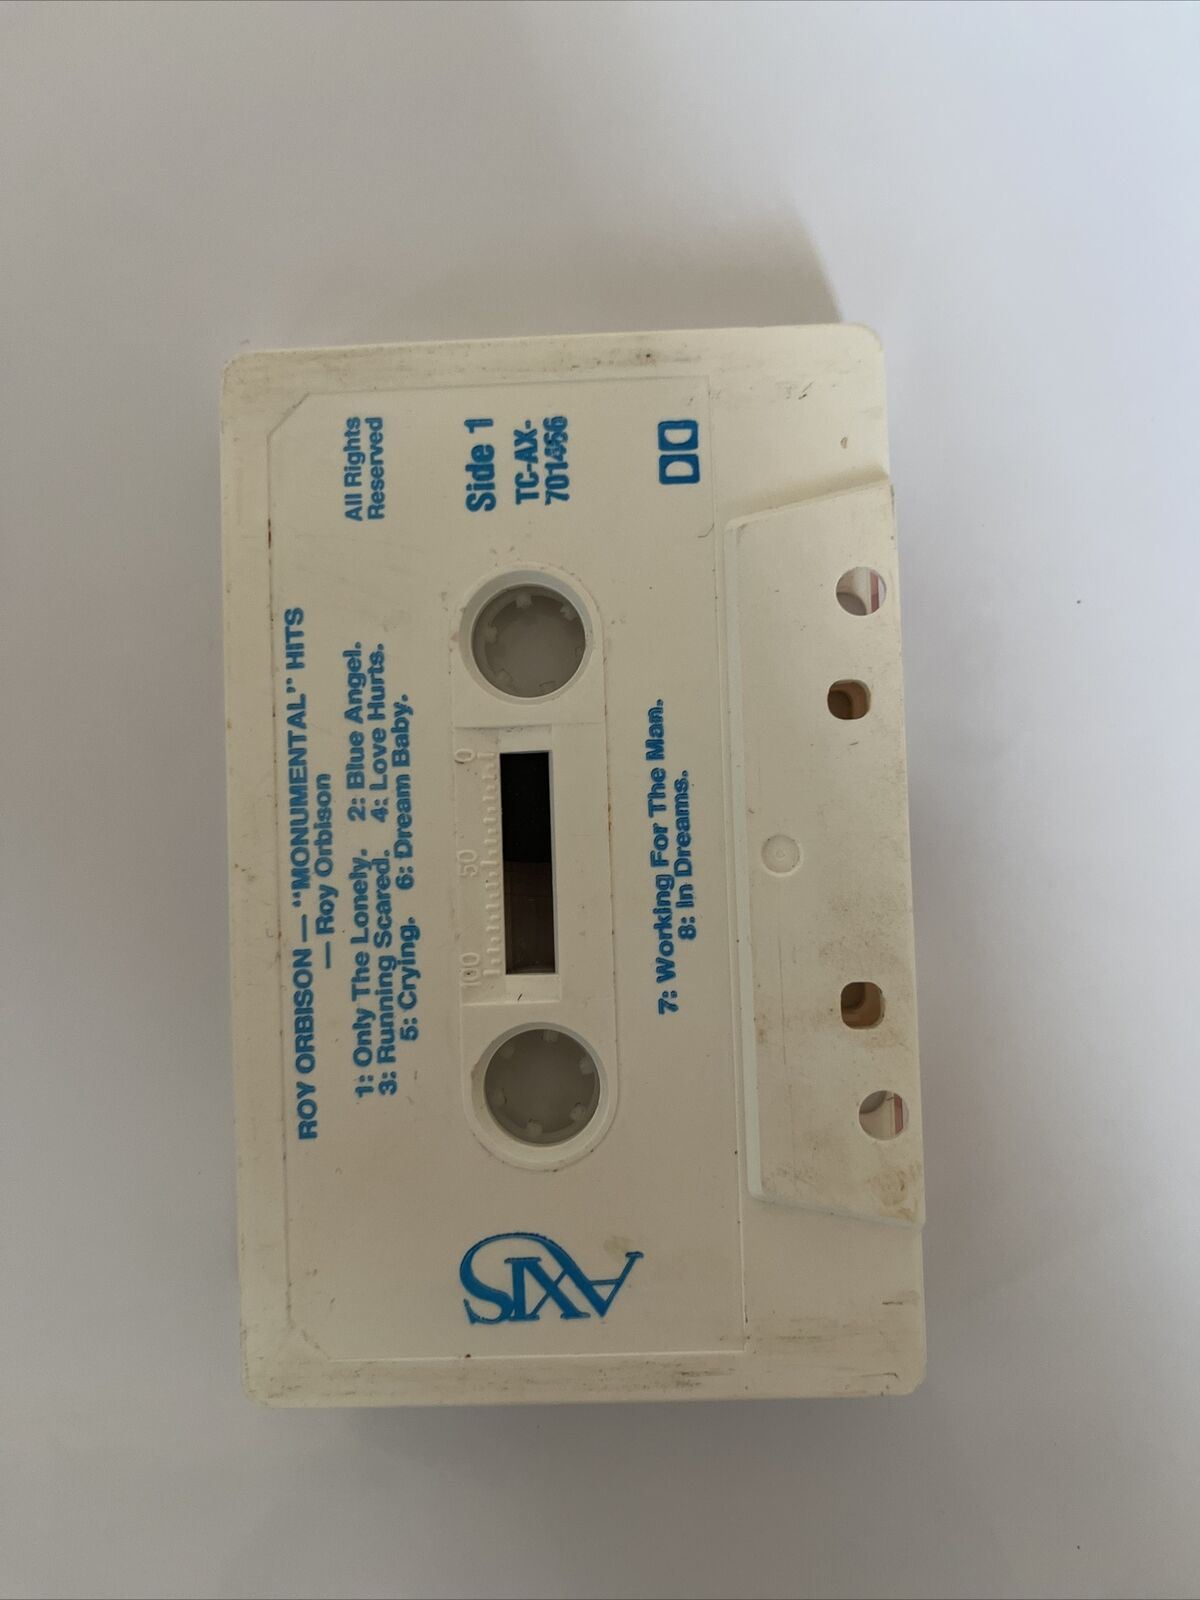 Roy Orbison - Monumental Hits 1989 Cassette Tape